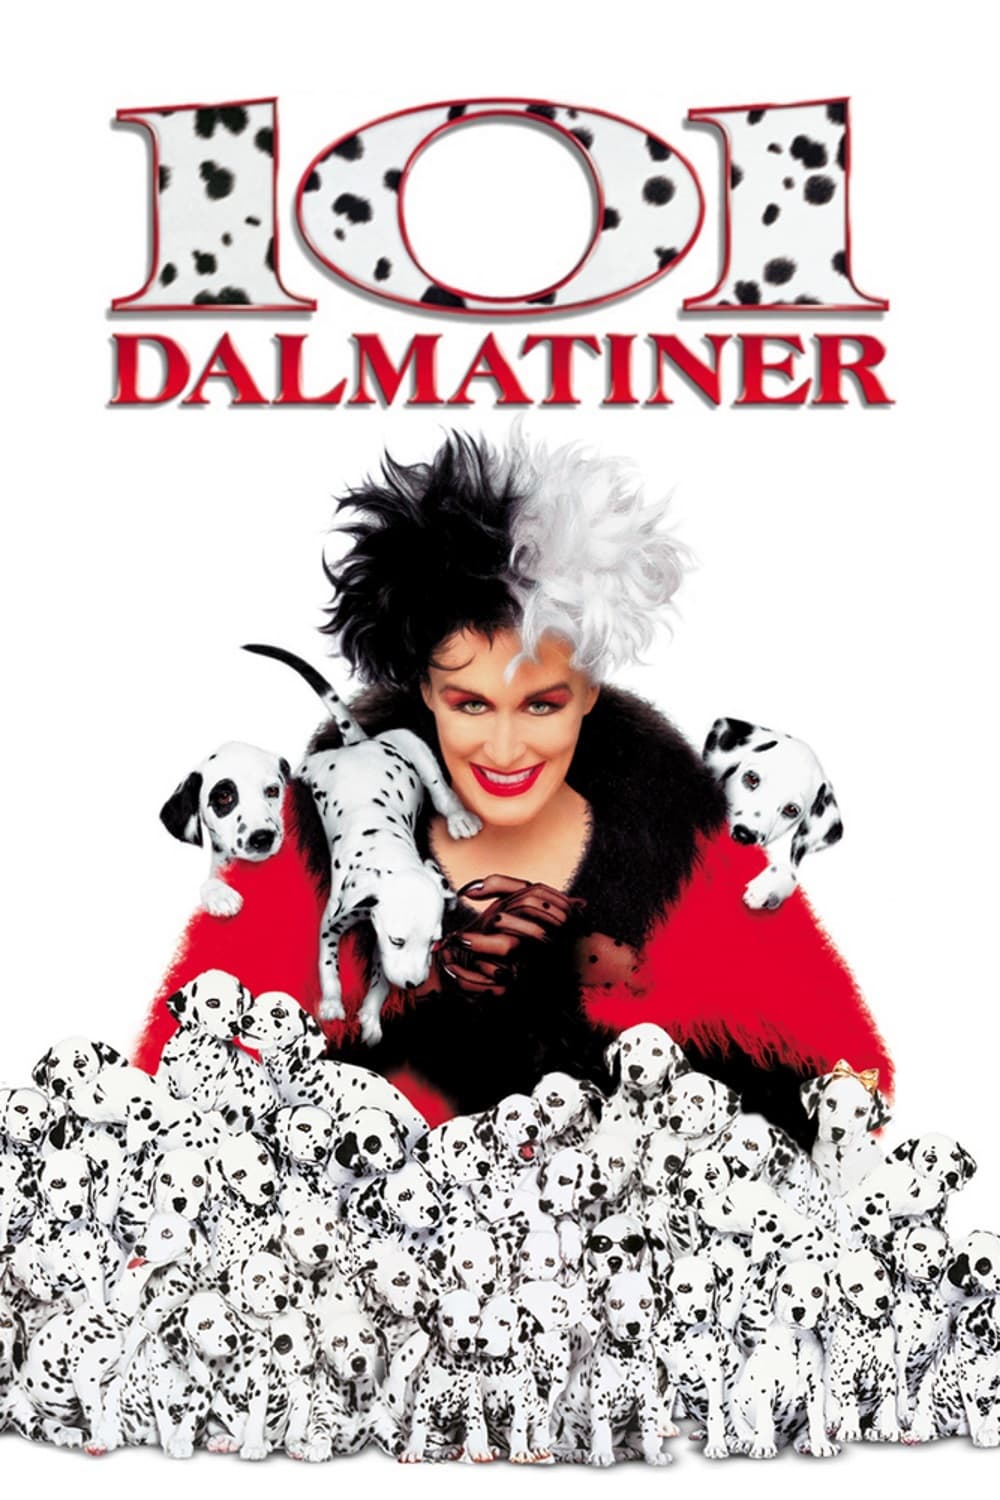 Plakat von "101 Dalmatiner"